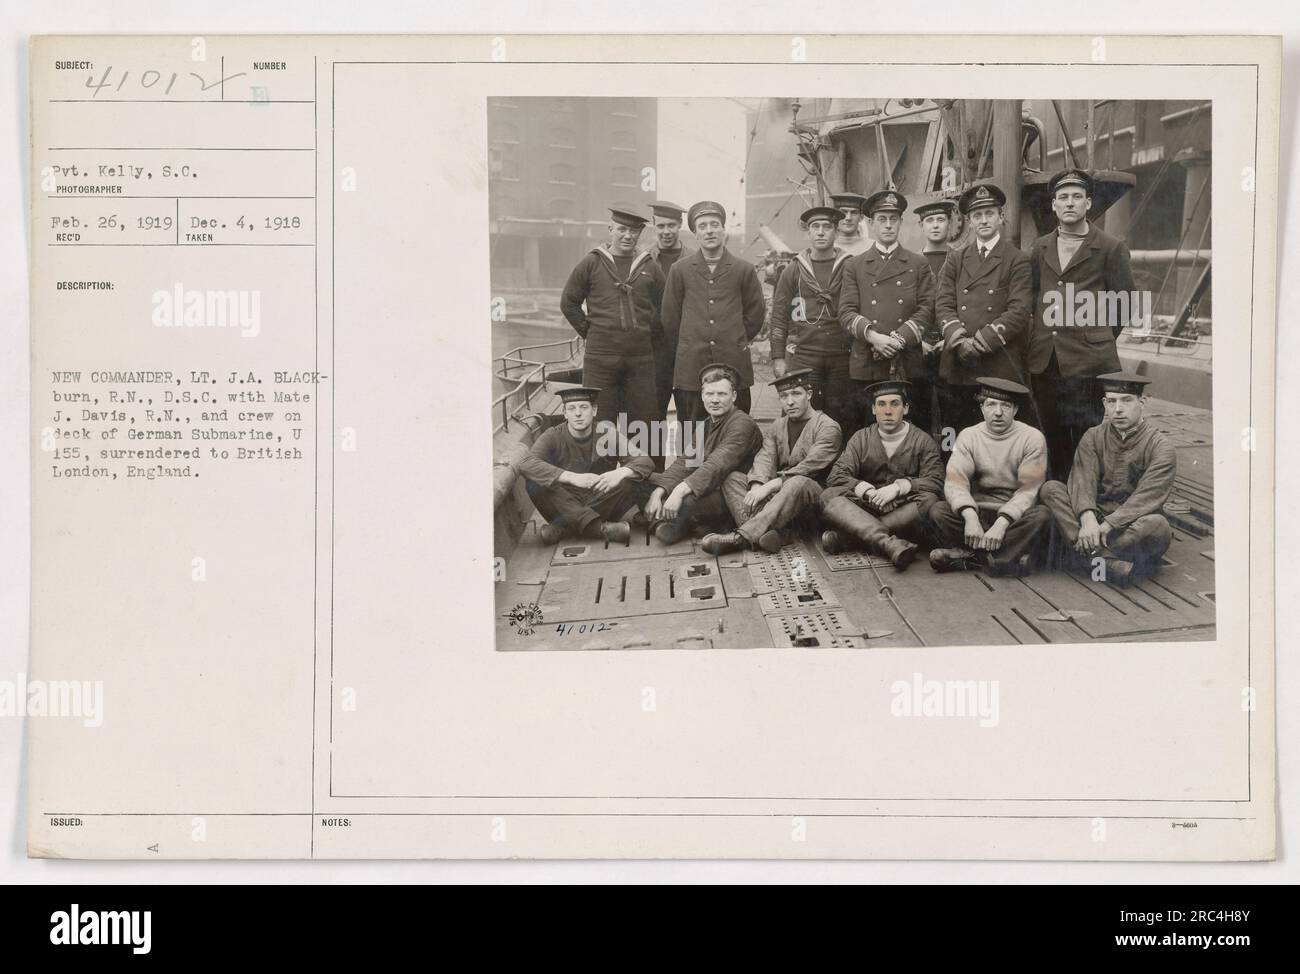 Pvt. Kelly und LT. J.A. Blackburn, R.N., D.S.C. sind auf dem Deck des deutschen U-Boots U 155 abgebildet. Das Foto wurde am 4. Dezember 1918 in London, England, aufgenommen. Auf dem Bild sind auch Mate J. Davis, R.N. und Crewmitglieder zu sehen. Das U-Boot hatte sich den britischen Behörden ergeben. Stockfoto